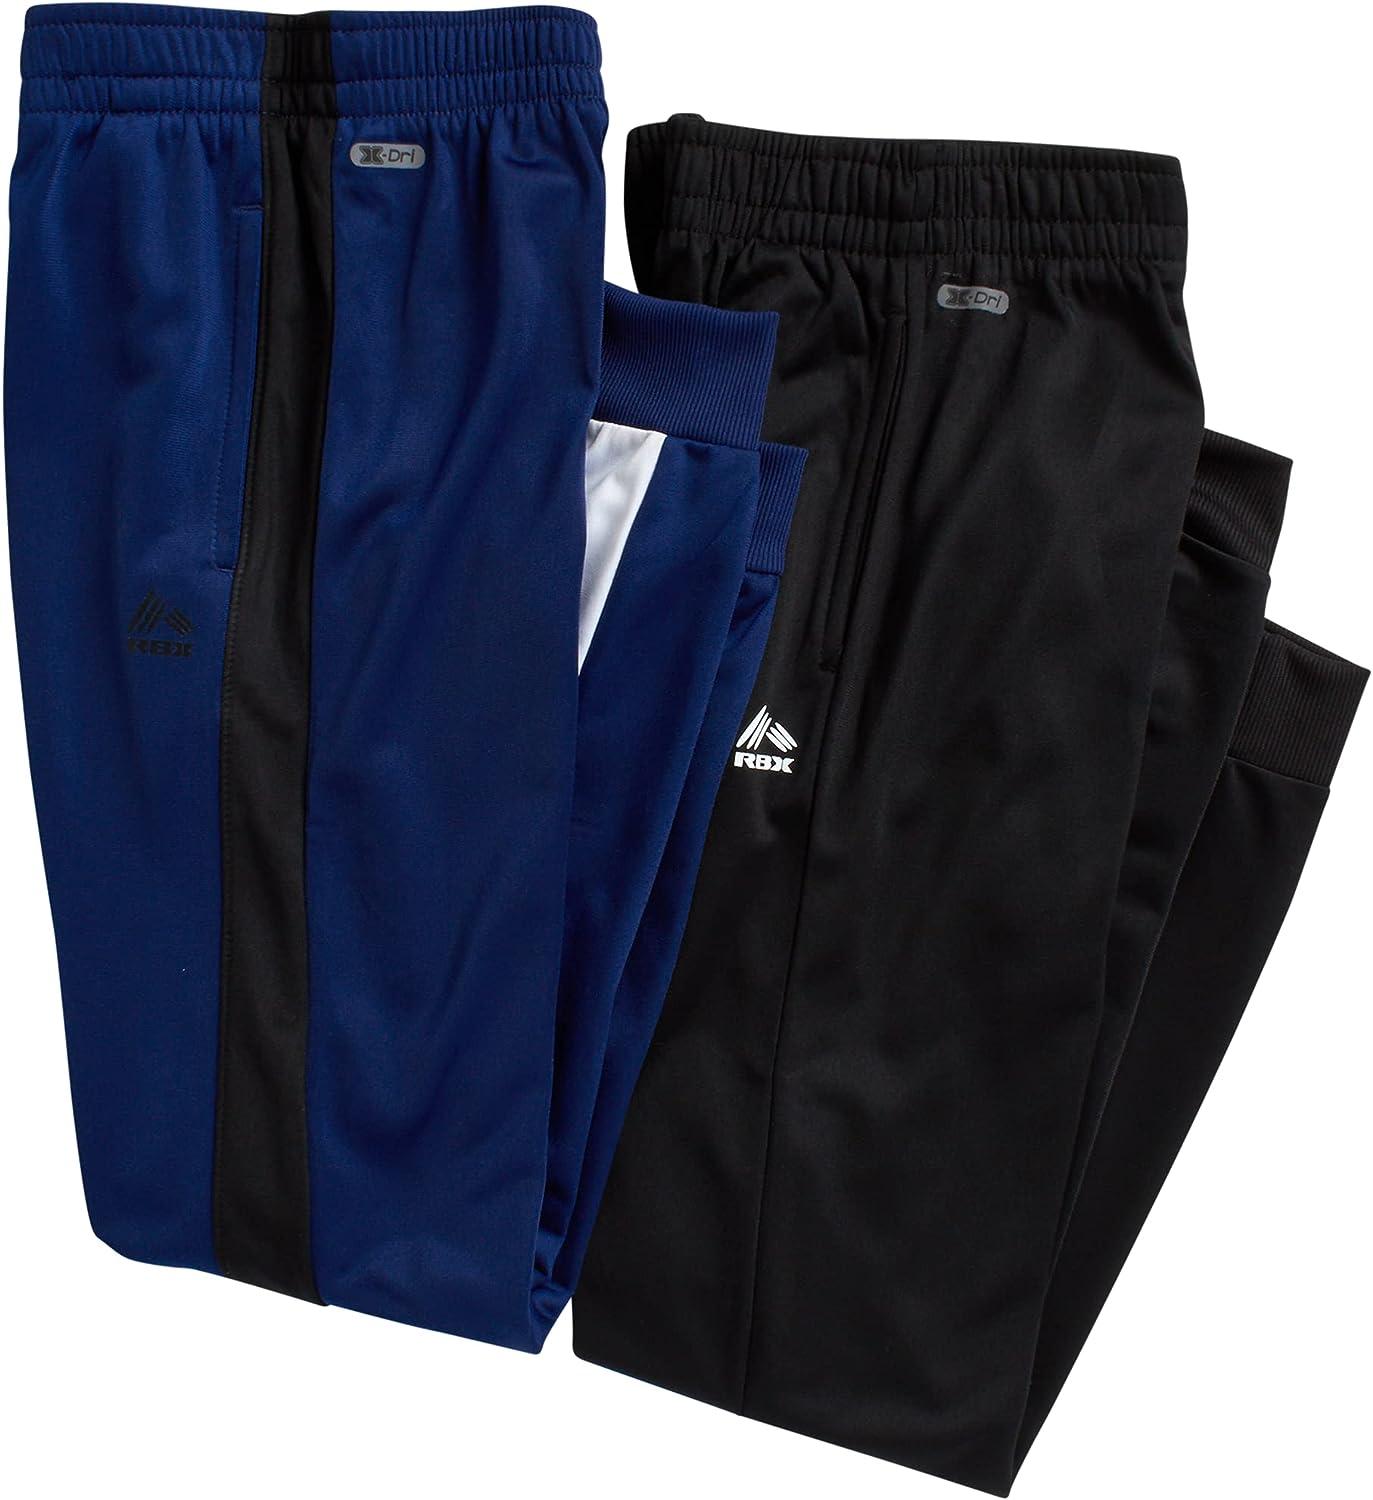 RBX Men Short Pants 1 GRAY 1 NAVY BLUE 2 PACK S M L & XL